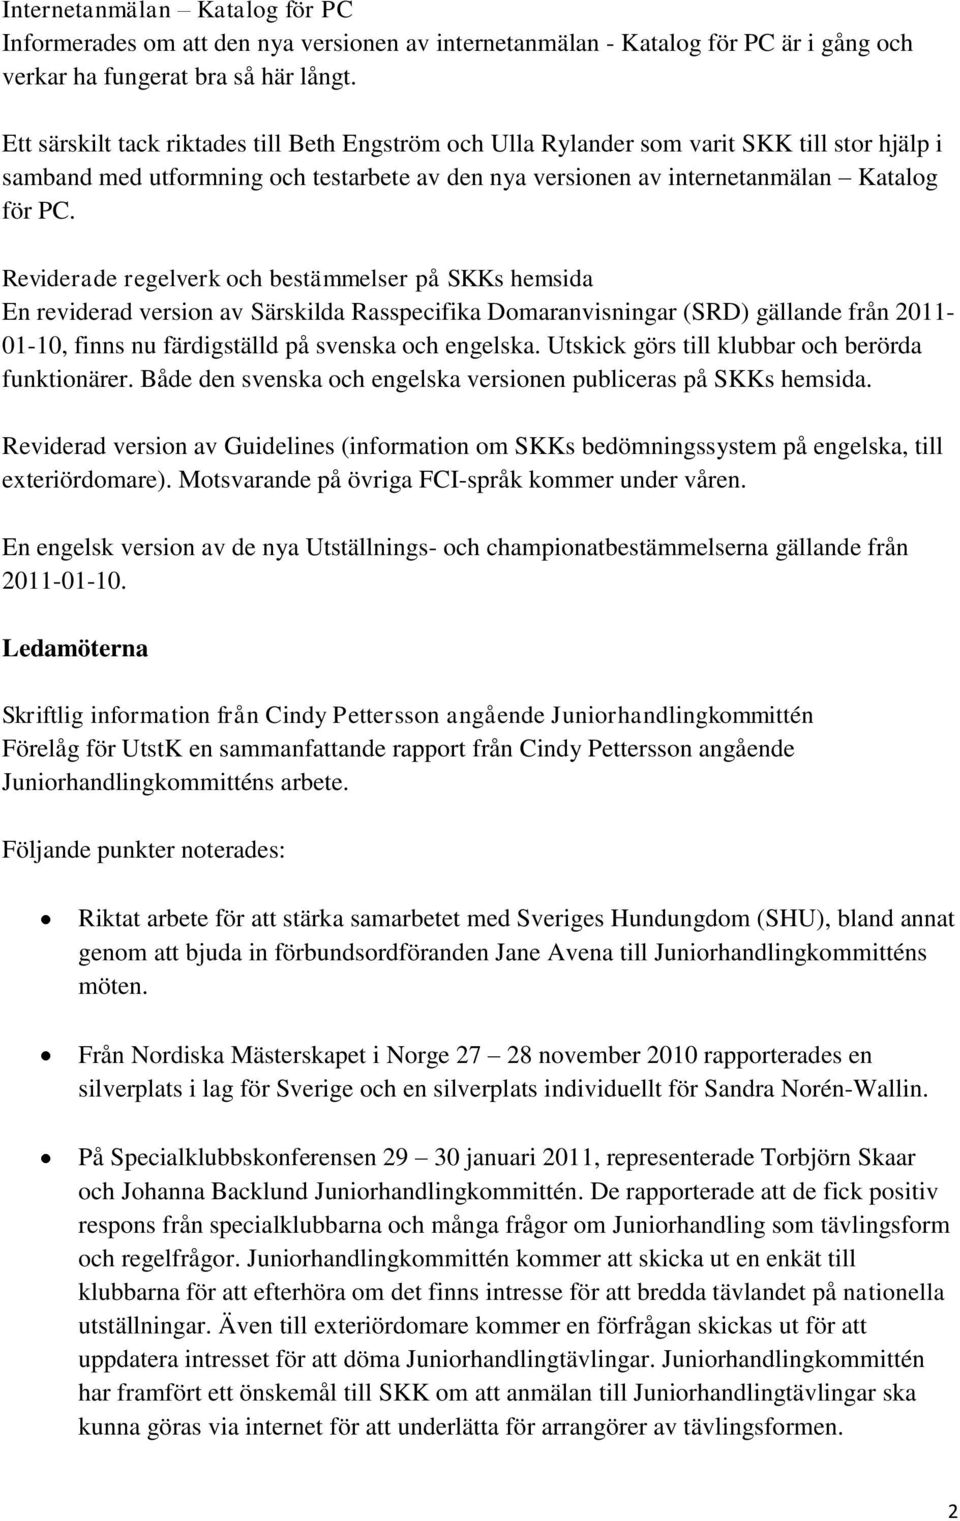 Reviderade regelverk och bestämmelser på SKKs hemsida En reviderad version av Särskilda Rasspecifika Domaranvisningar (SRD) gällande från 2011-01-10, finns nu färdigställd på svenska och engelska.